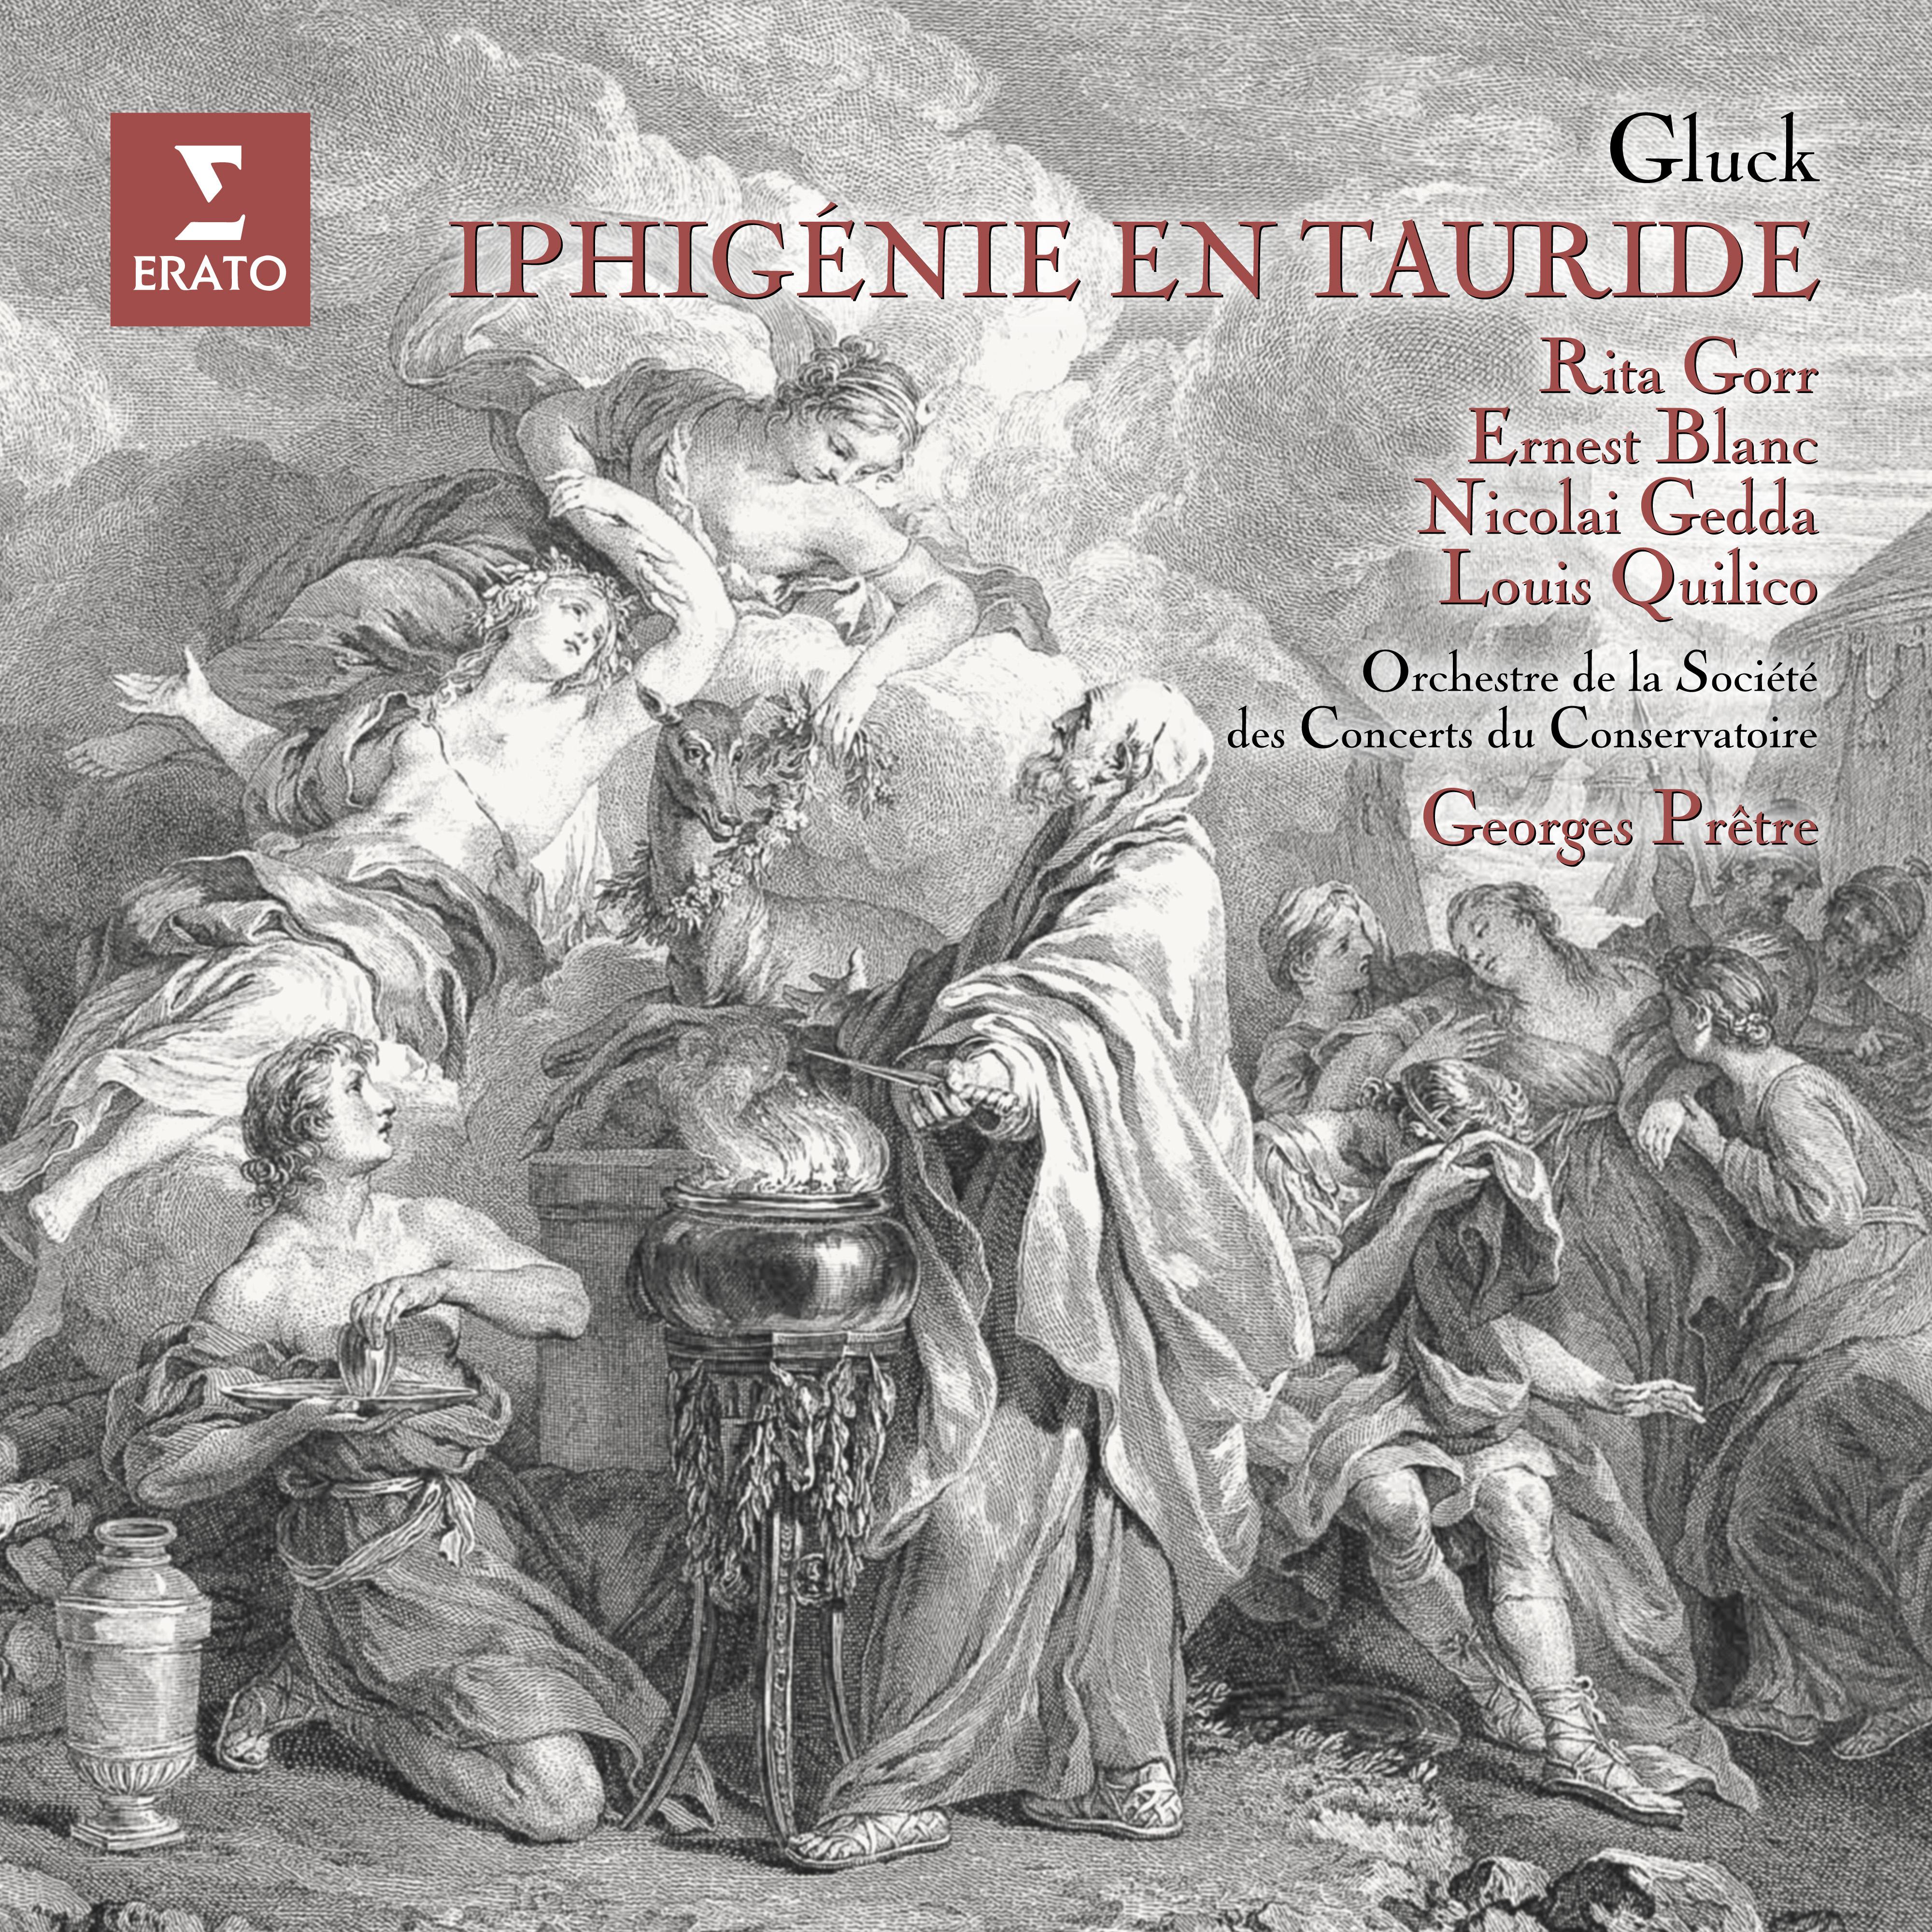 Orchestre de la Société des Concerts du Conservatoire - Iphigénie en Tauride, Wq. 46, Act 1: